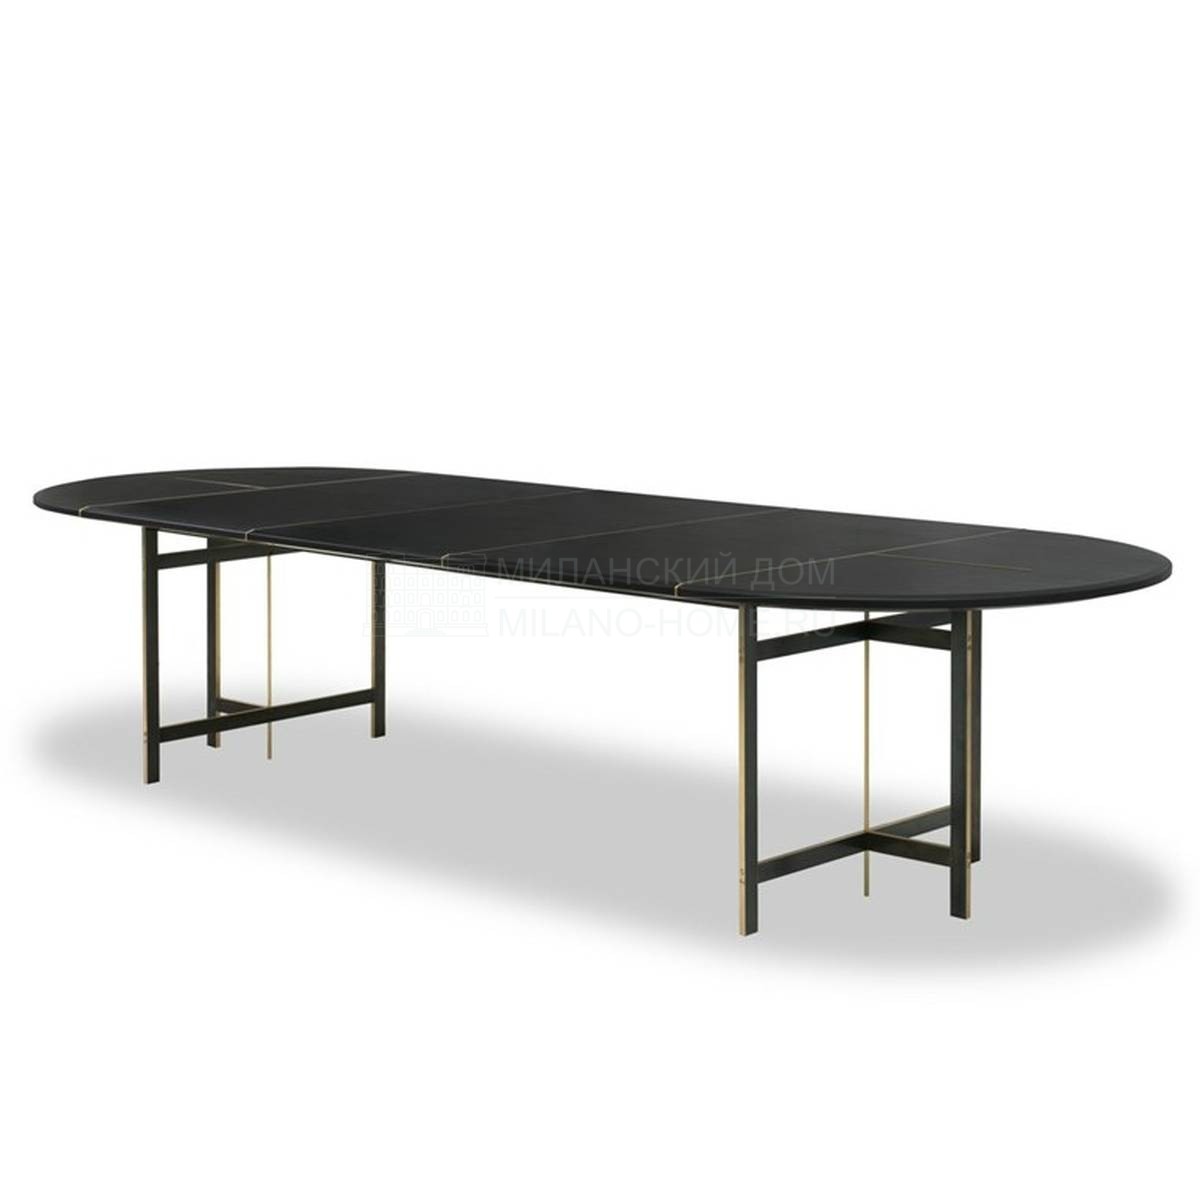 Обеденный стол Place table из Италии фабрики BAXTER